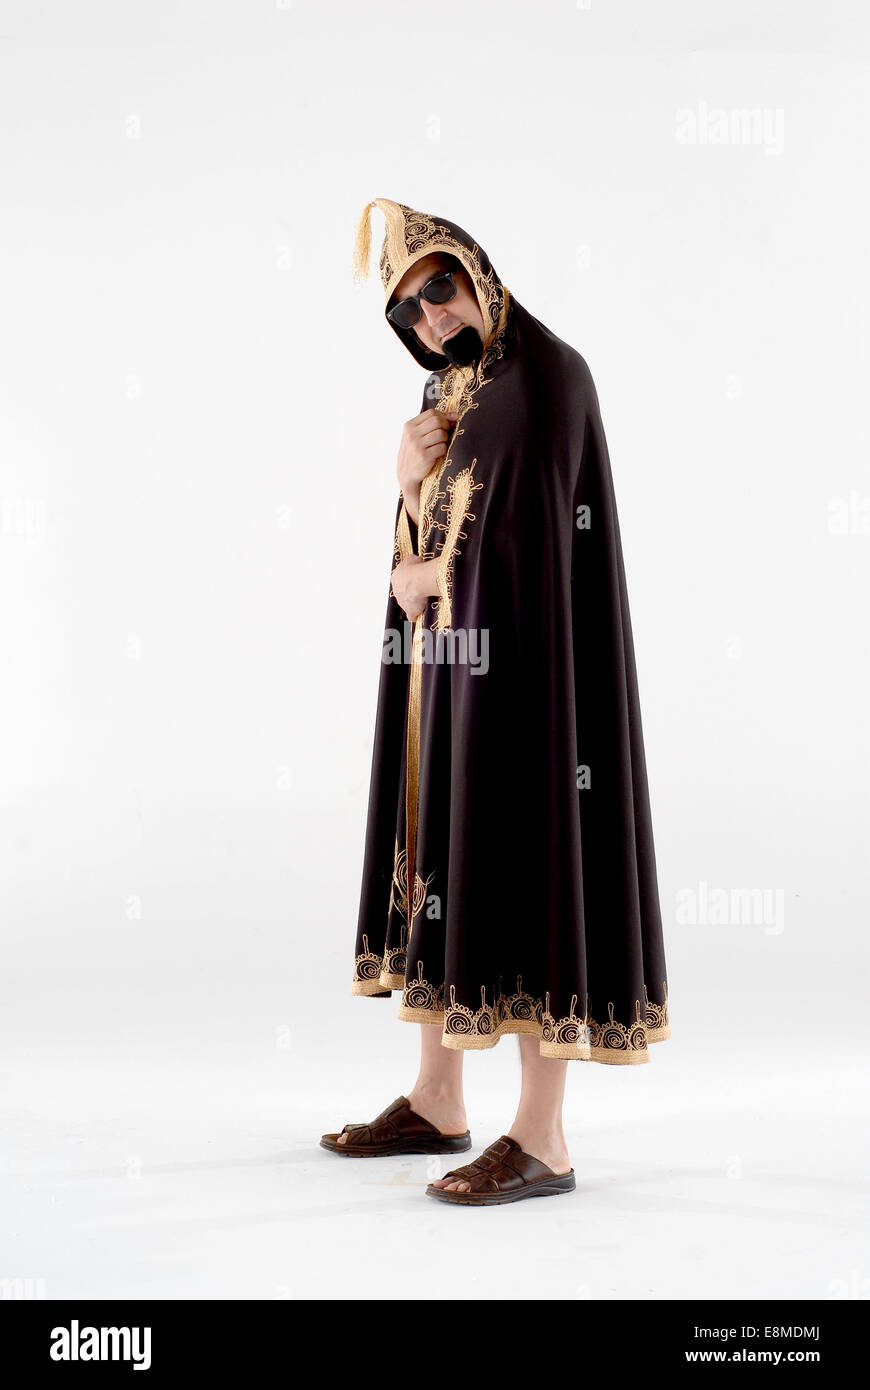 Hombre vestido de traje en la comedia de disfraces en conjunto, África del norte Foto de stock